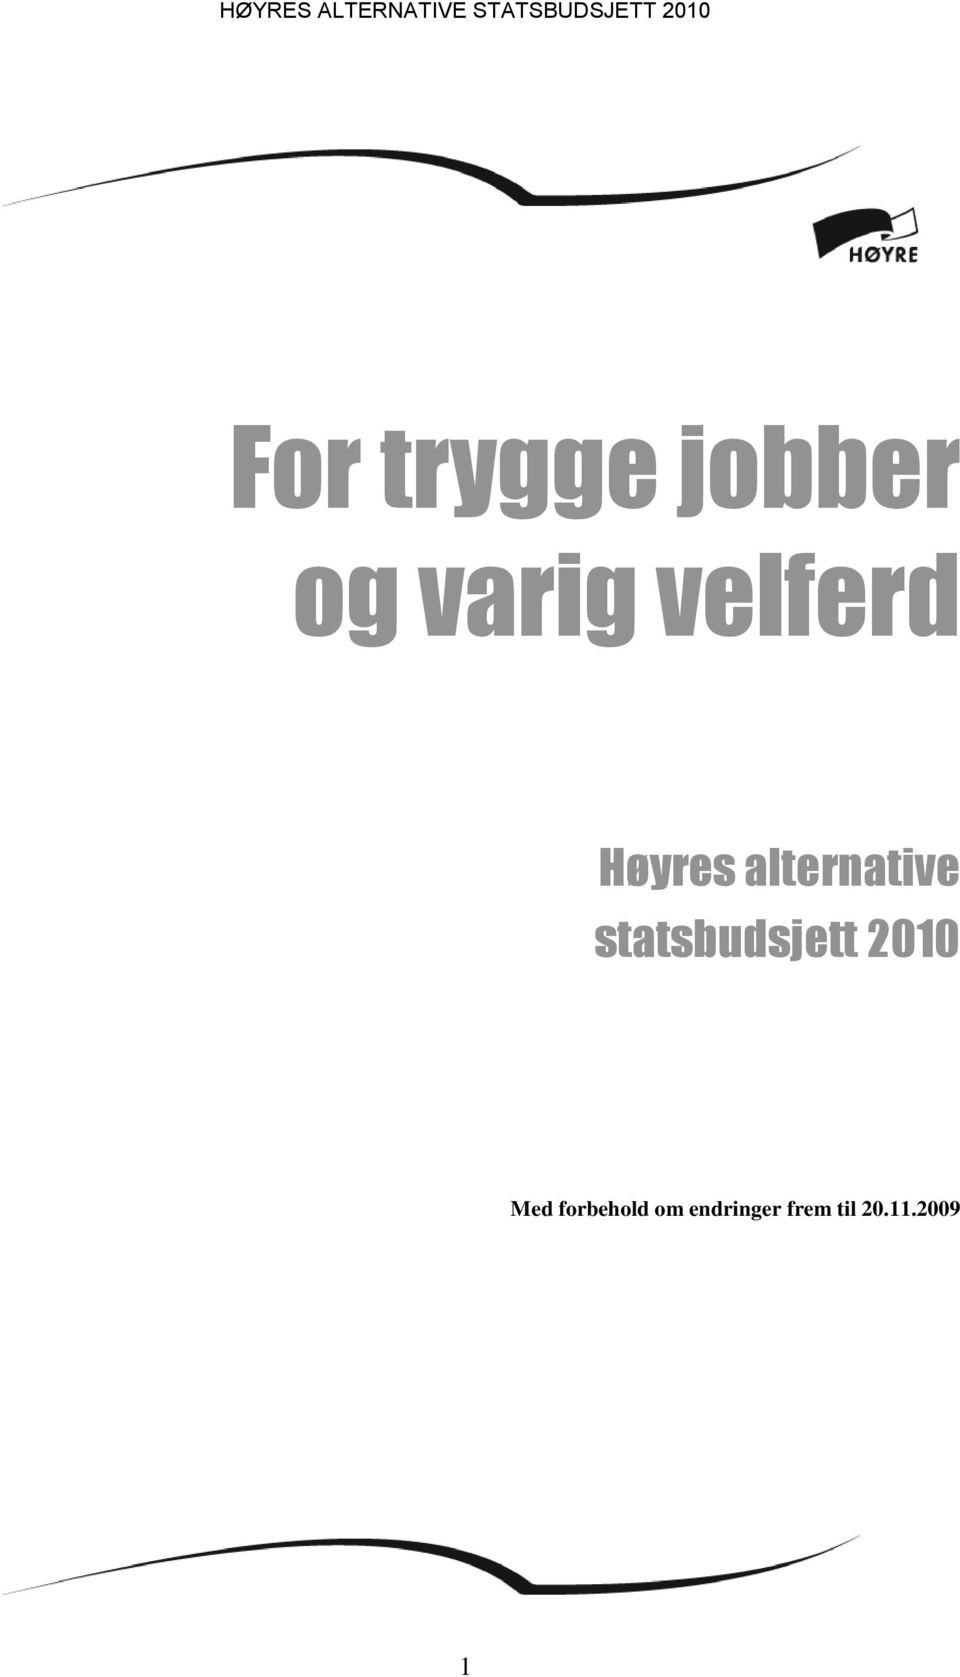 statsbudsjett 2010 Med